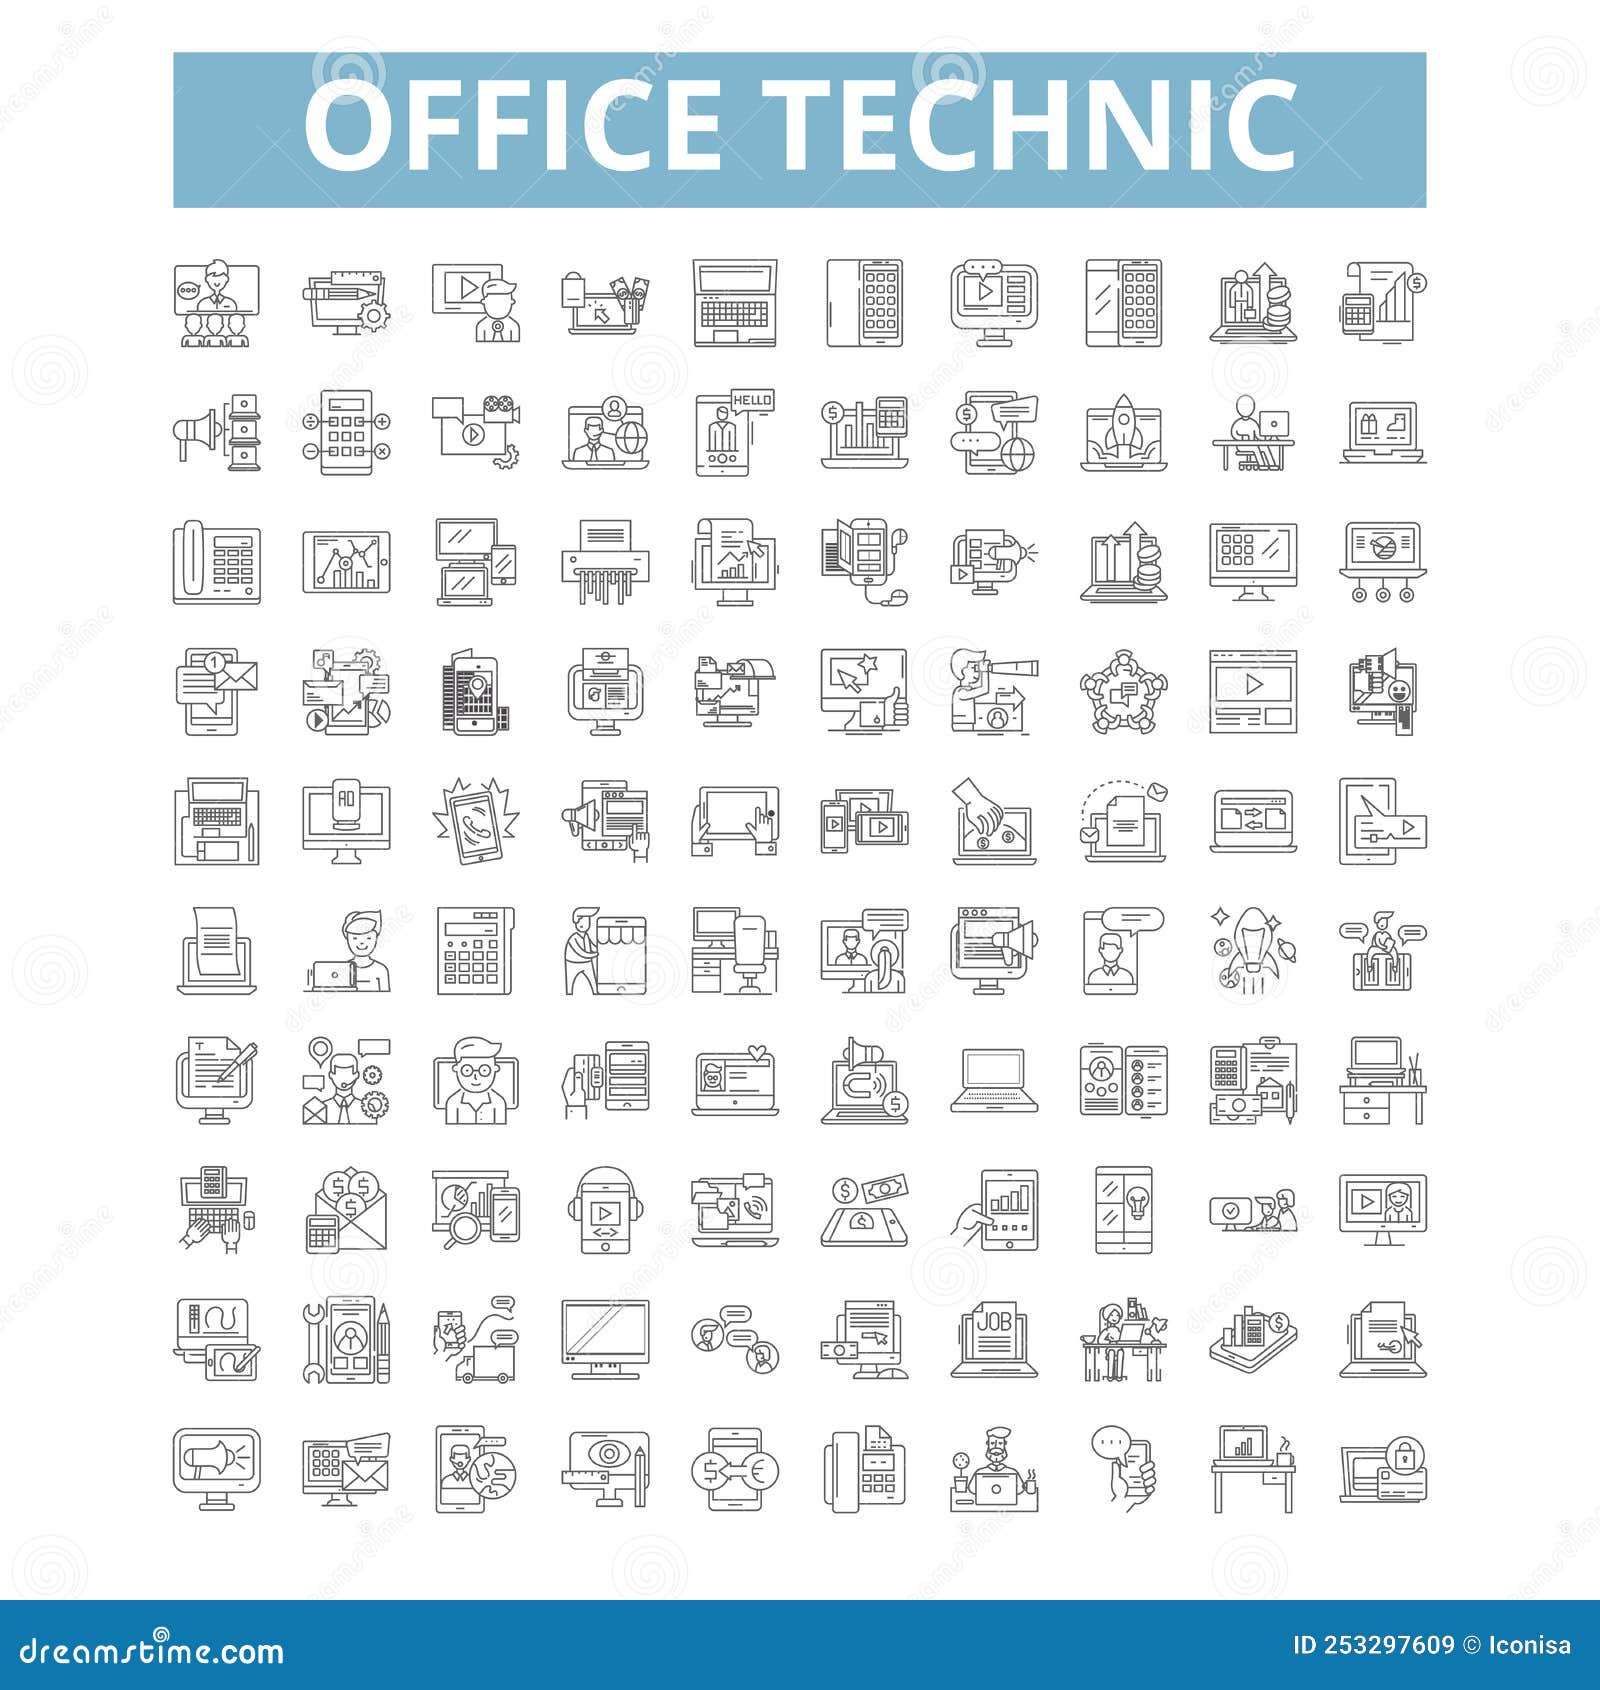 office-technic